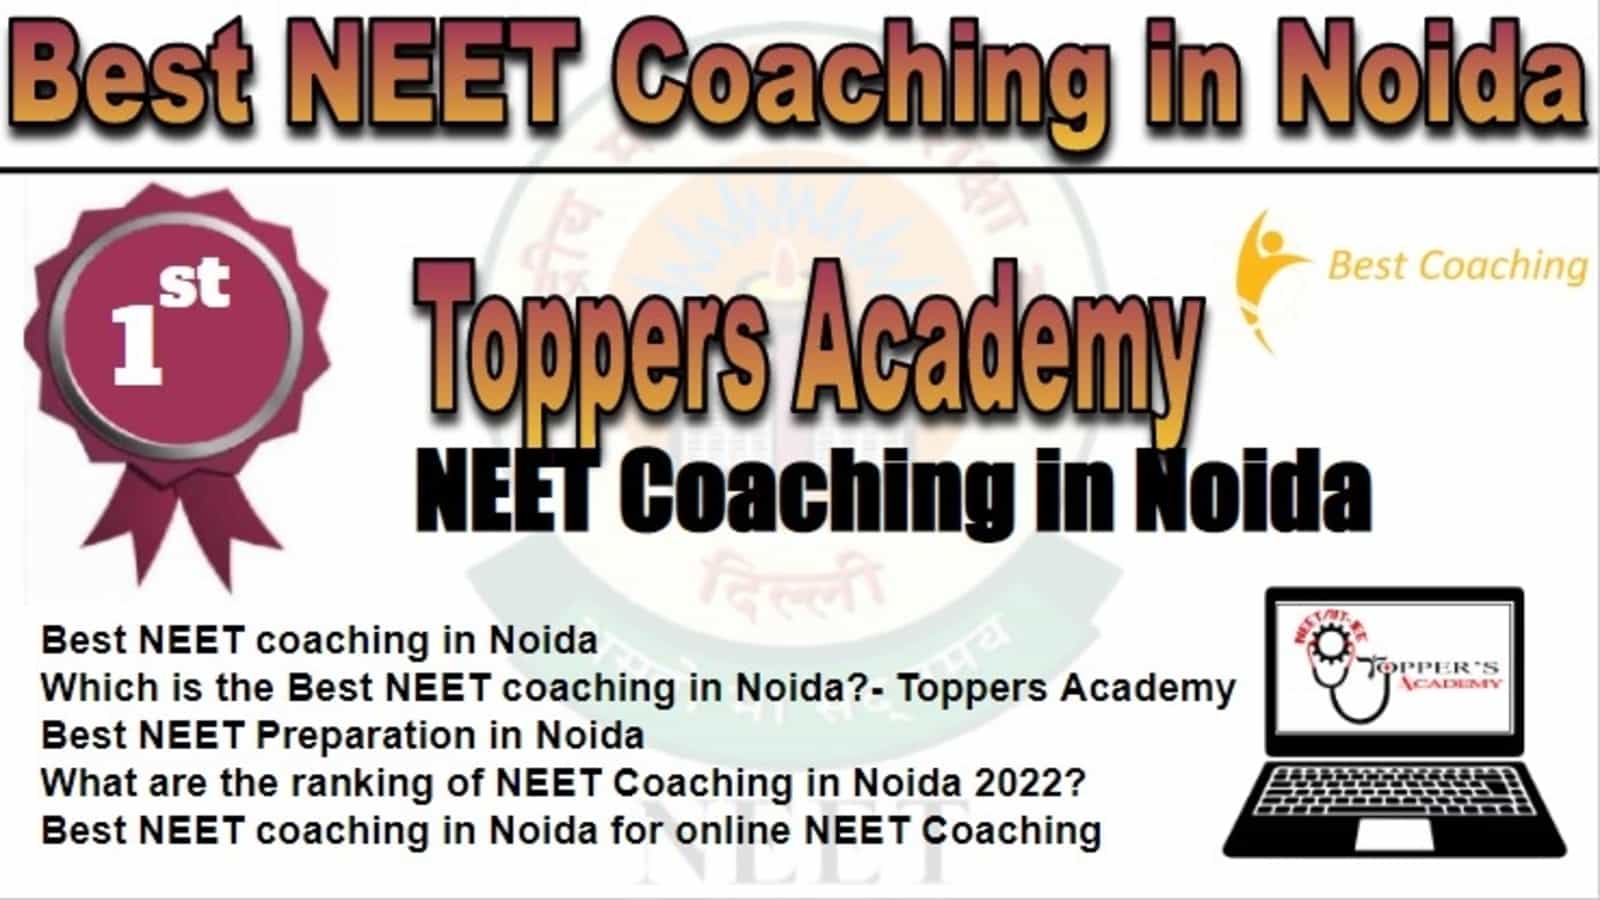 Rank 1 Best NEET Coaching in Noida